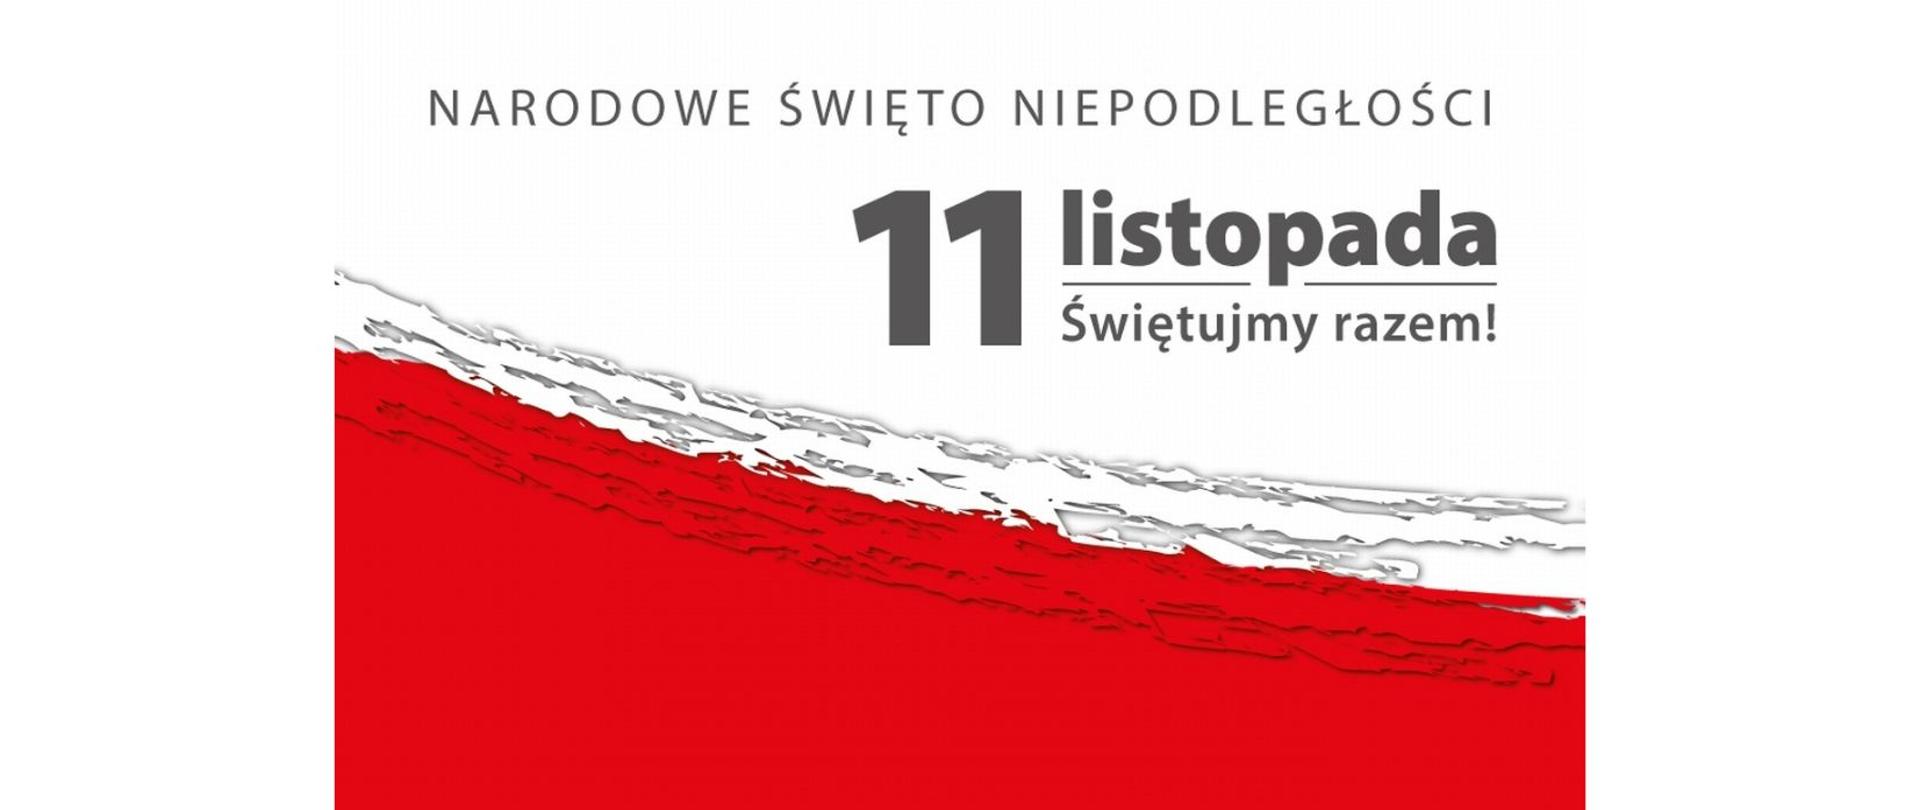 Napis Narodowe Święto Niepodległości - 11 listopada - Świętujemy razem! na biało czerwonym tle.